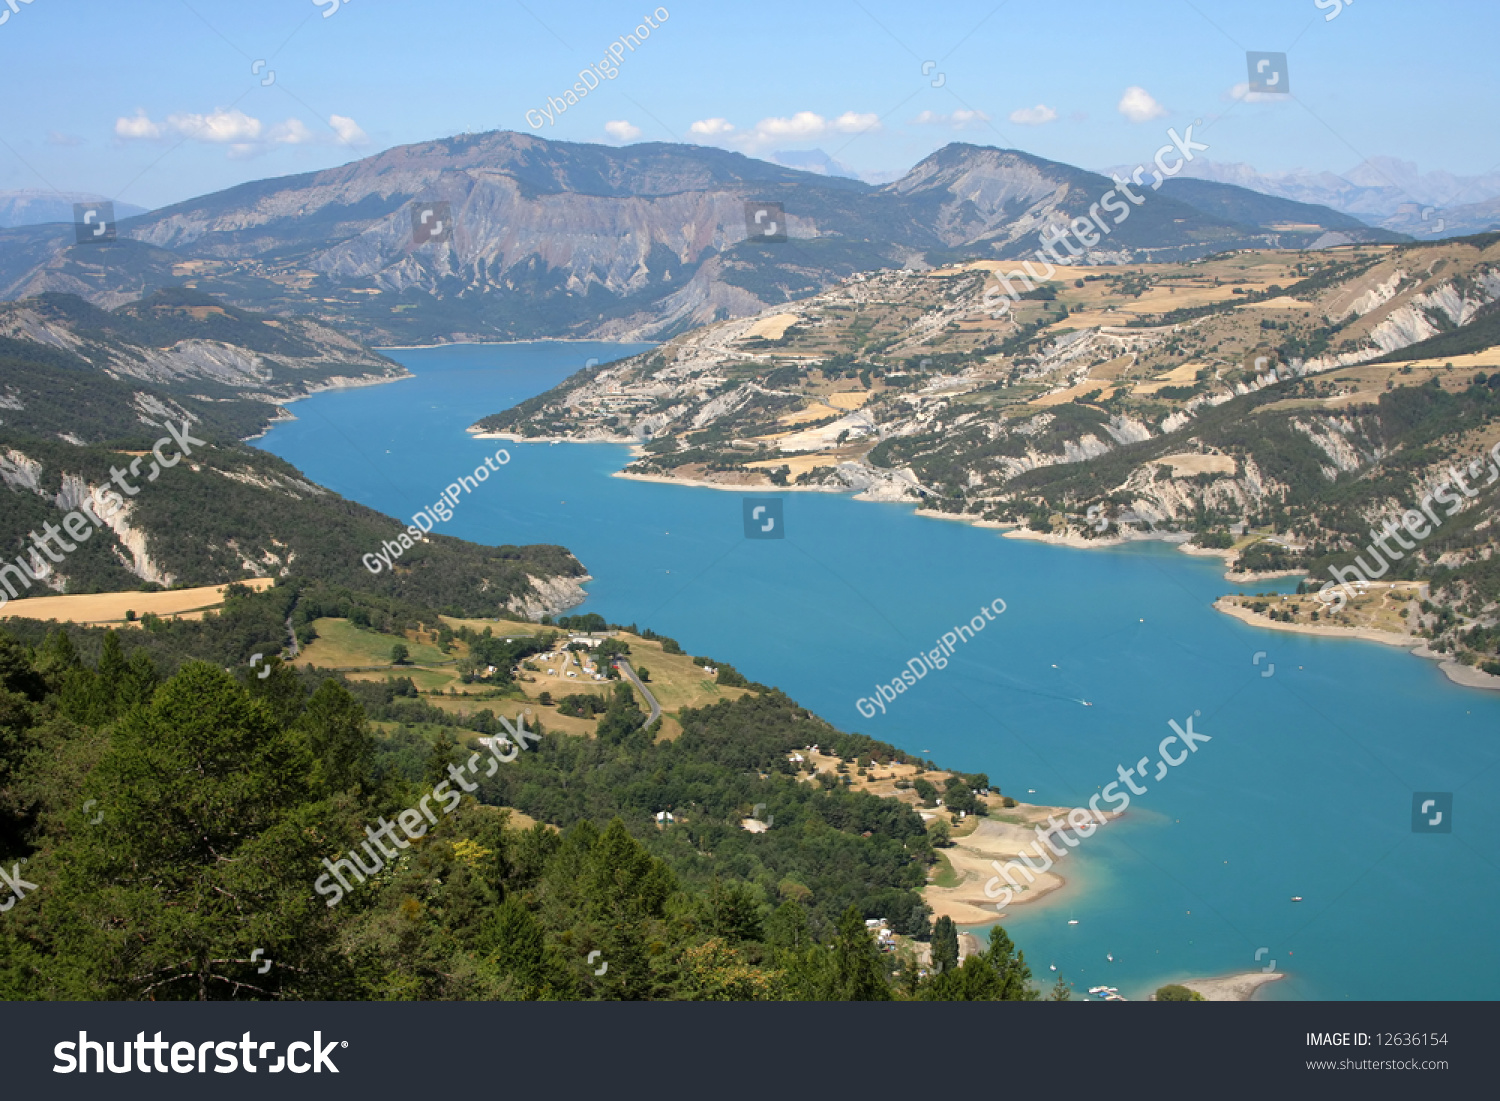 Lac de Serre-Poncon in French Alps #12636154